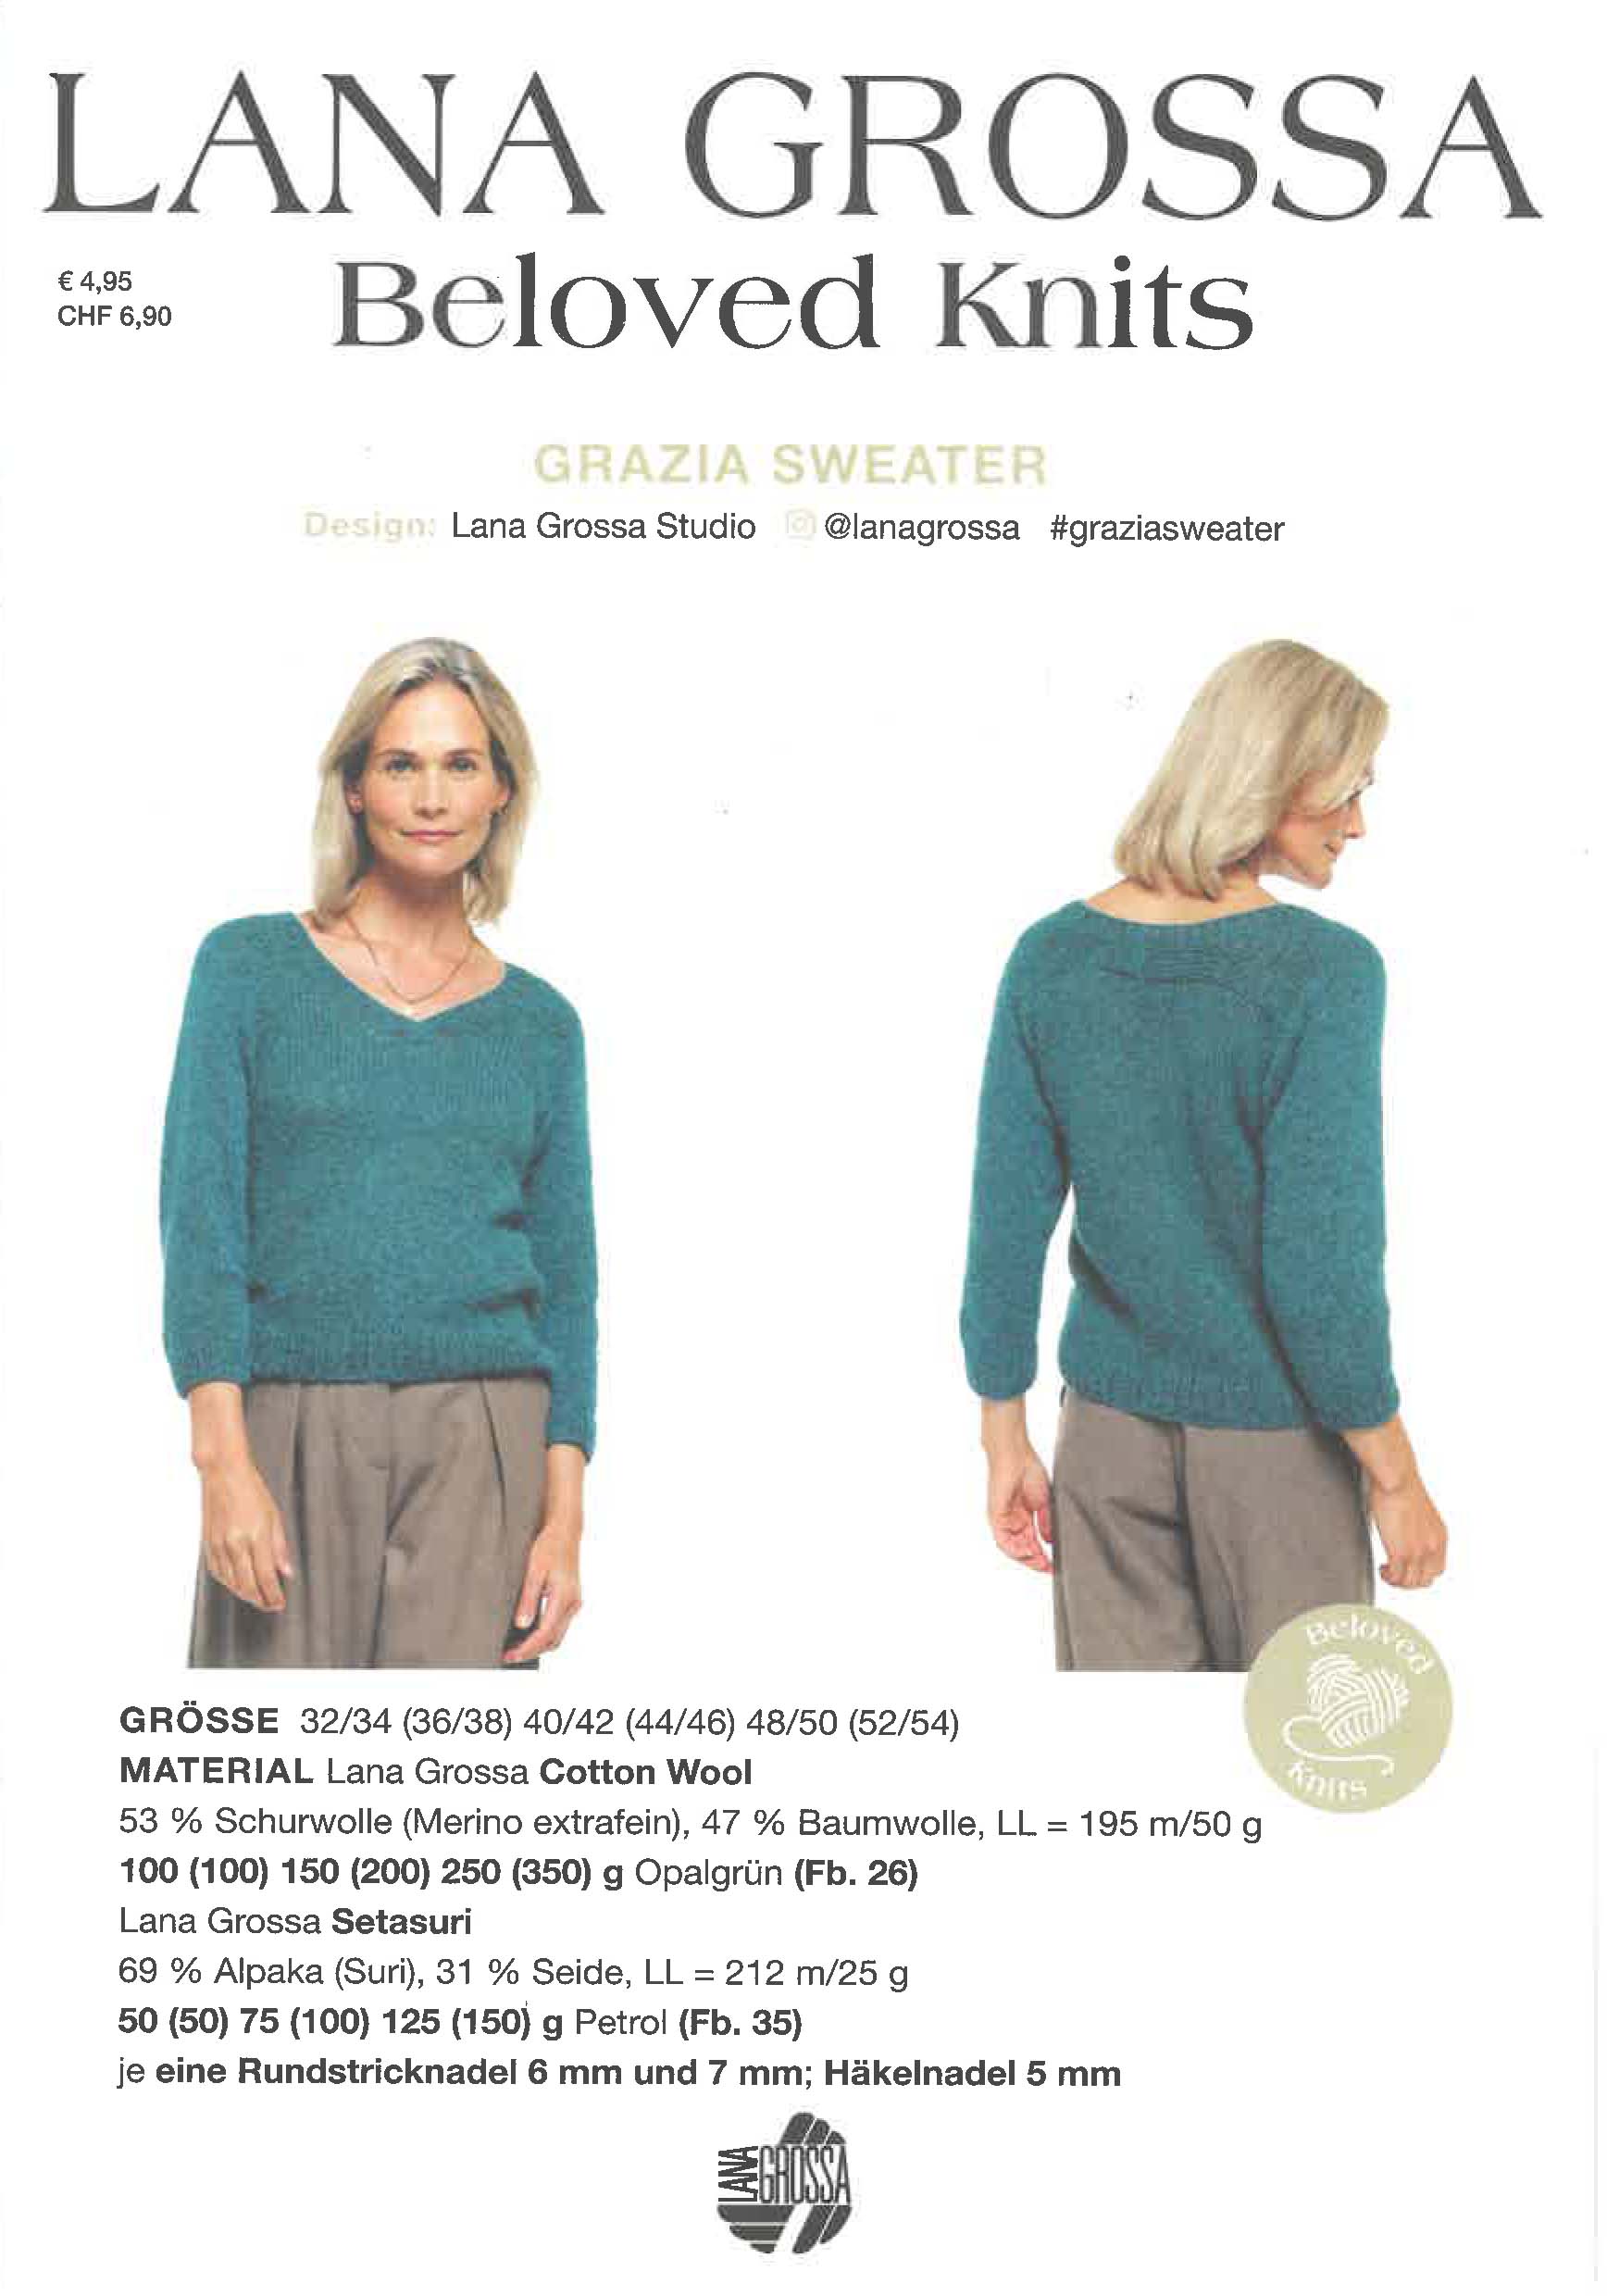 Grazia Sweater